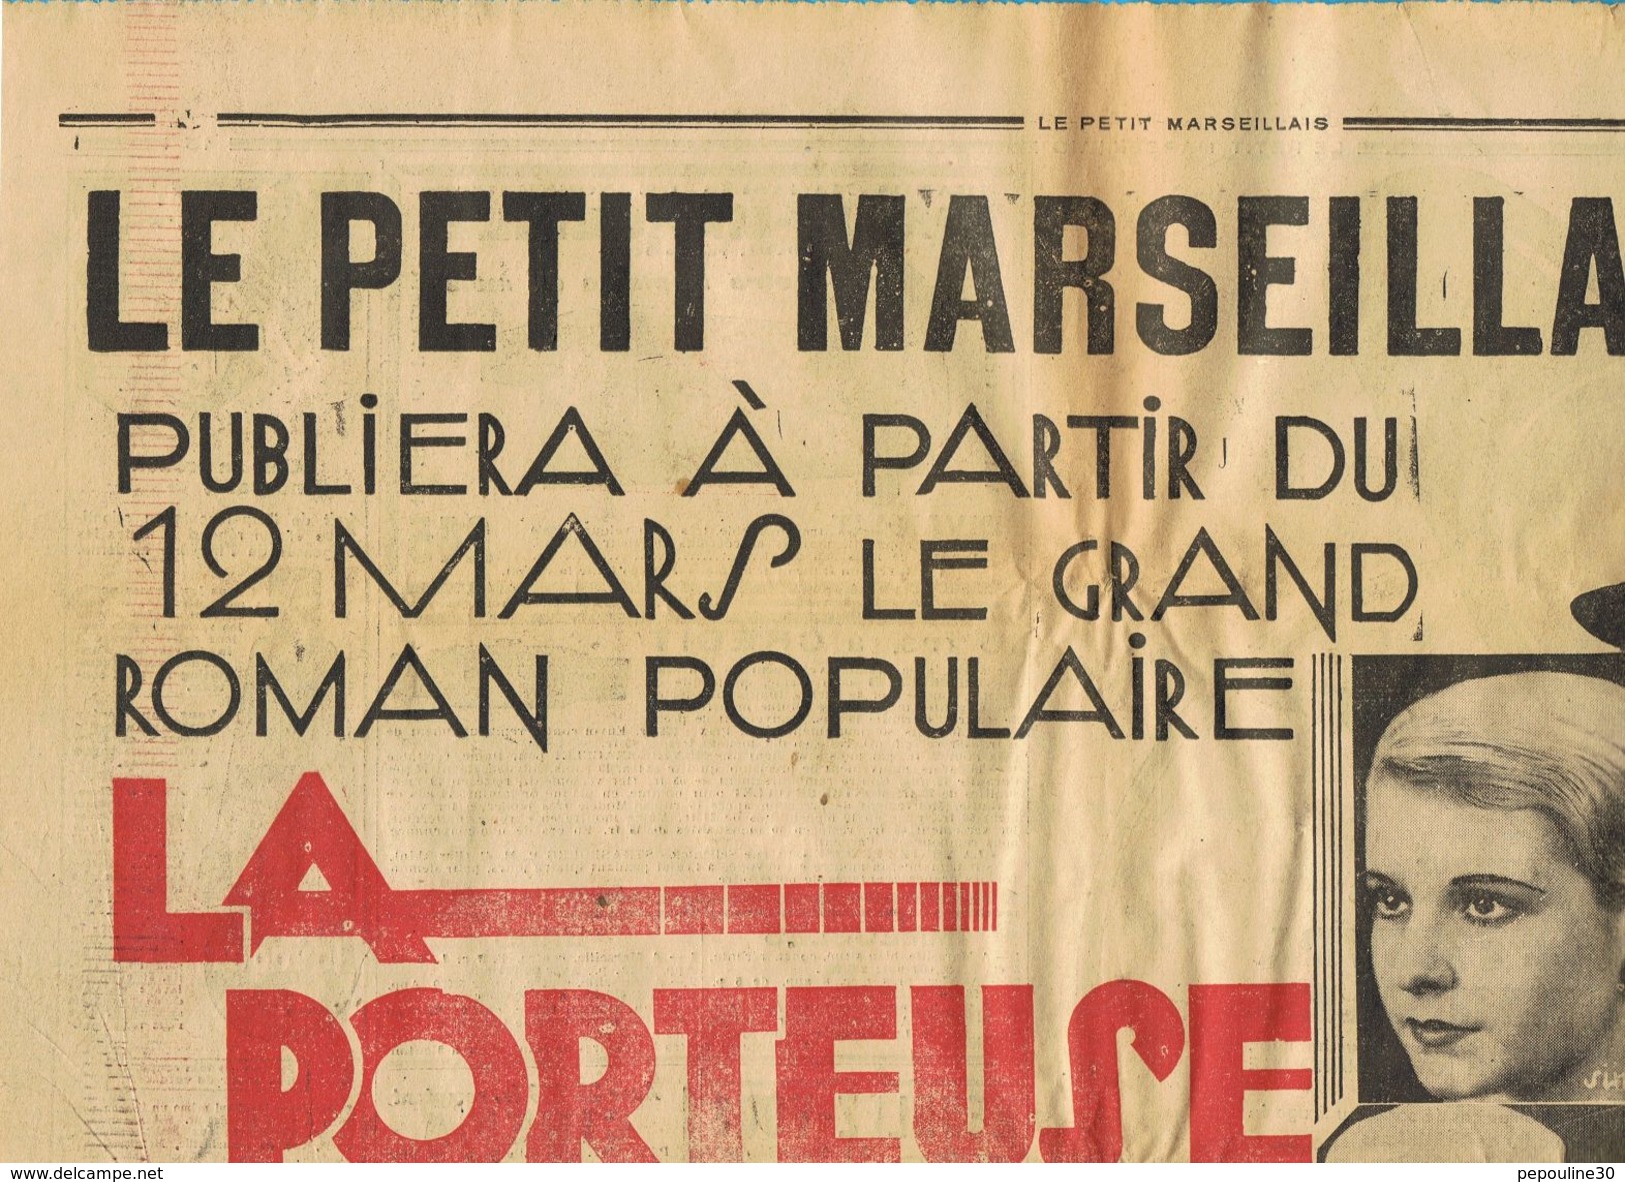 ** JOURNAL ** LE PETIT MARSEILLAIS ** 2ème ÉDITION DU ** JEUDI 08 MARS 1934 ** - Le Petit Marseillais